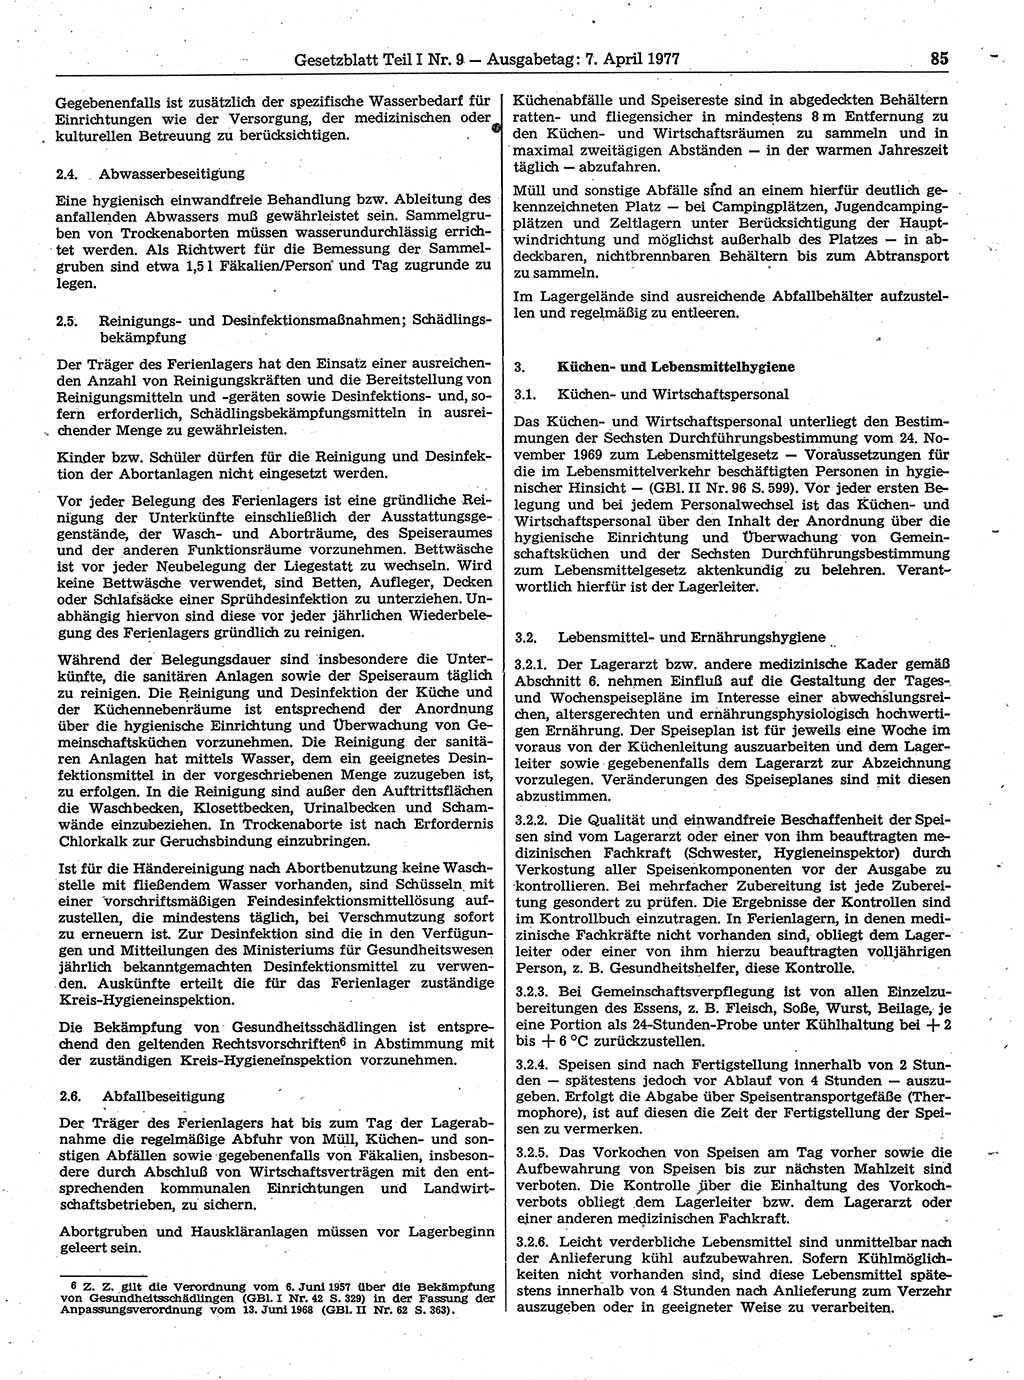 Gesetzblatt (GBl.) der Deutschen Demokratischen Republik (DDR) Teil Ⅰ 1977, Seite 85 (GBl. DDR Ⅰ 1977, S. 85)